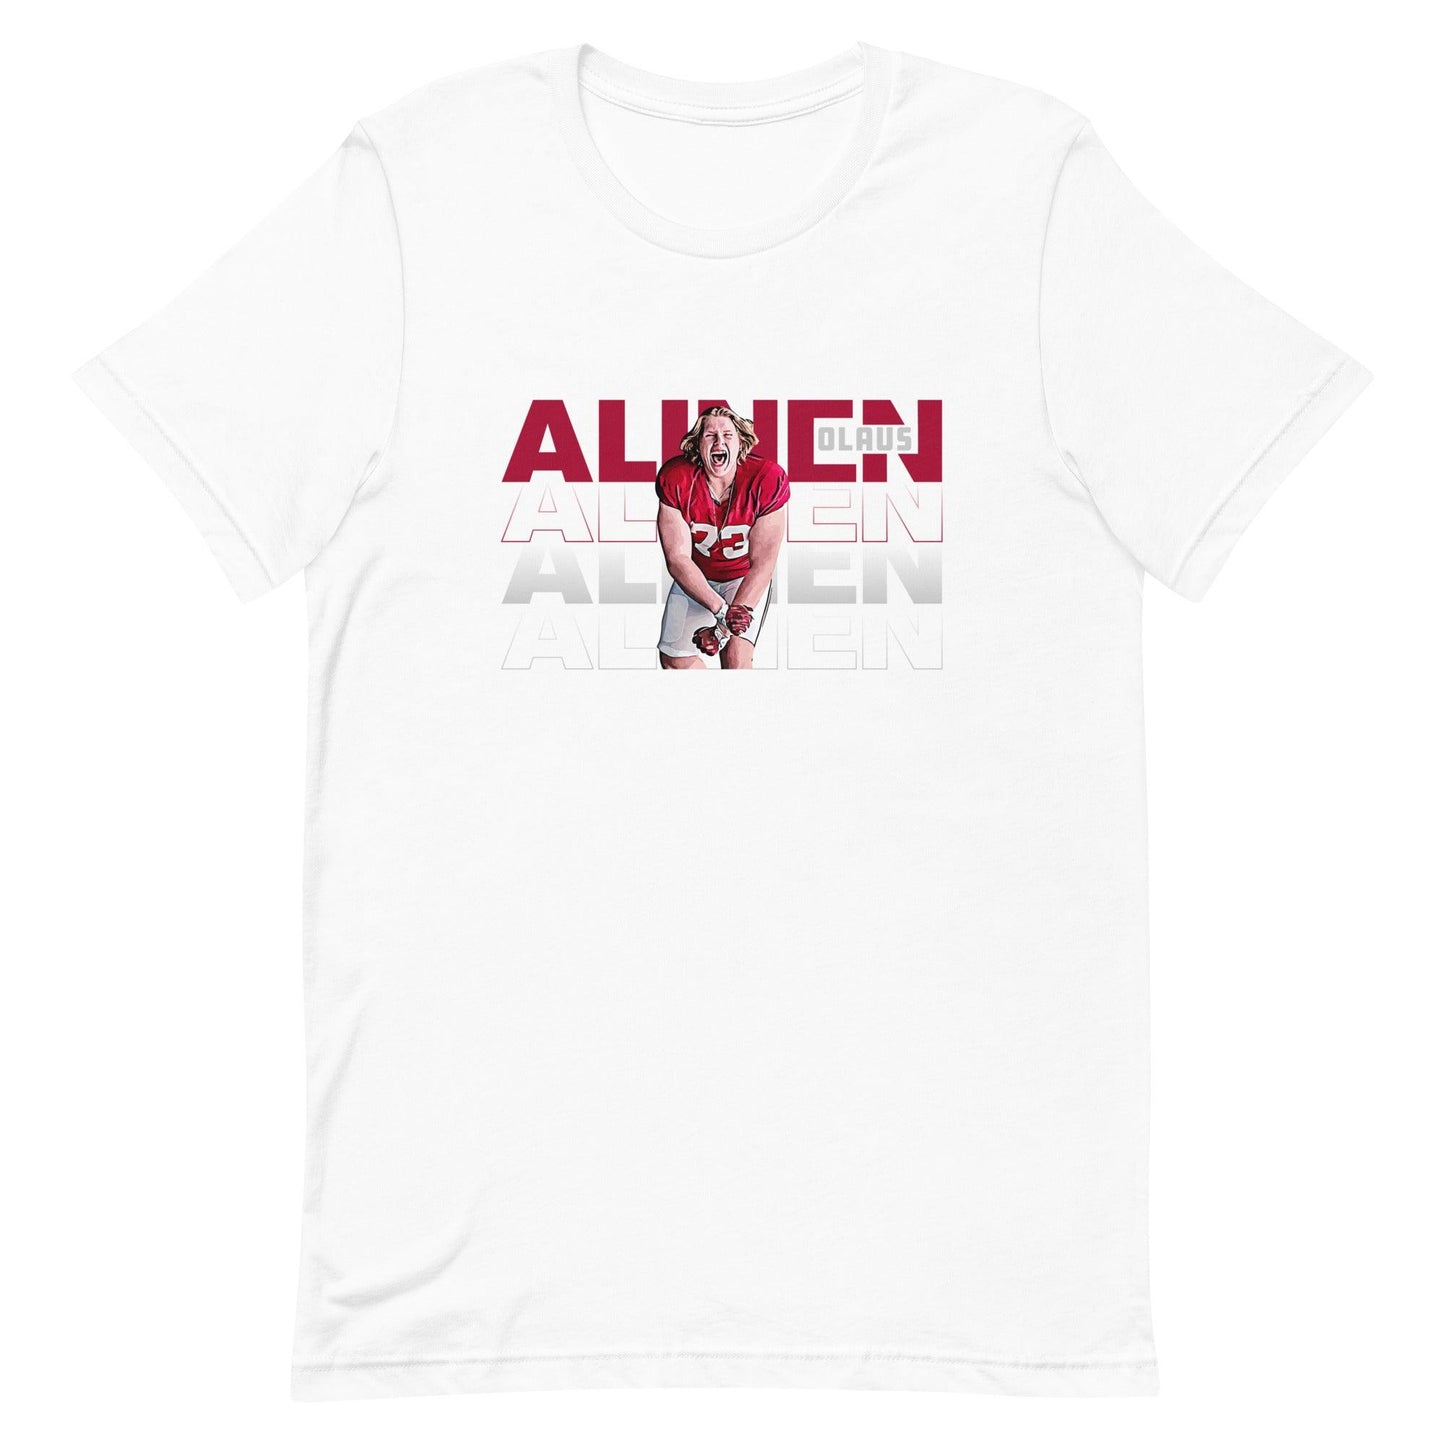 Olaus Alinen "Gameday" t-shirt - Fan Arch